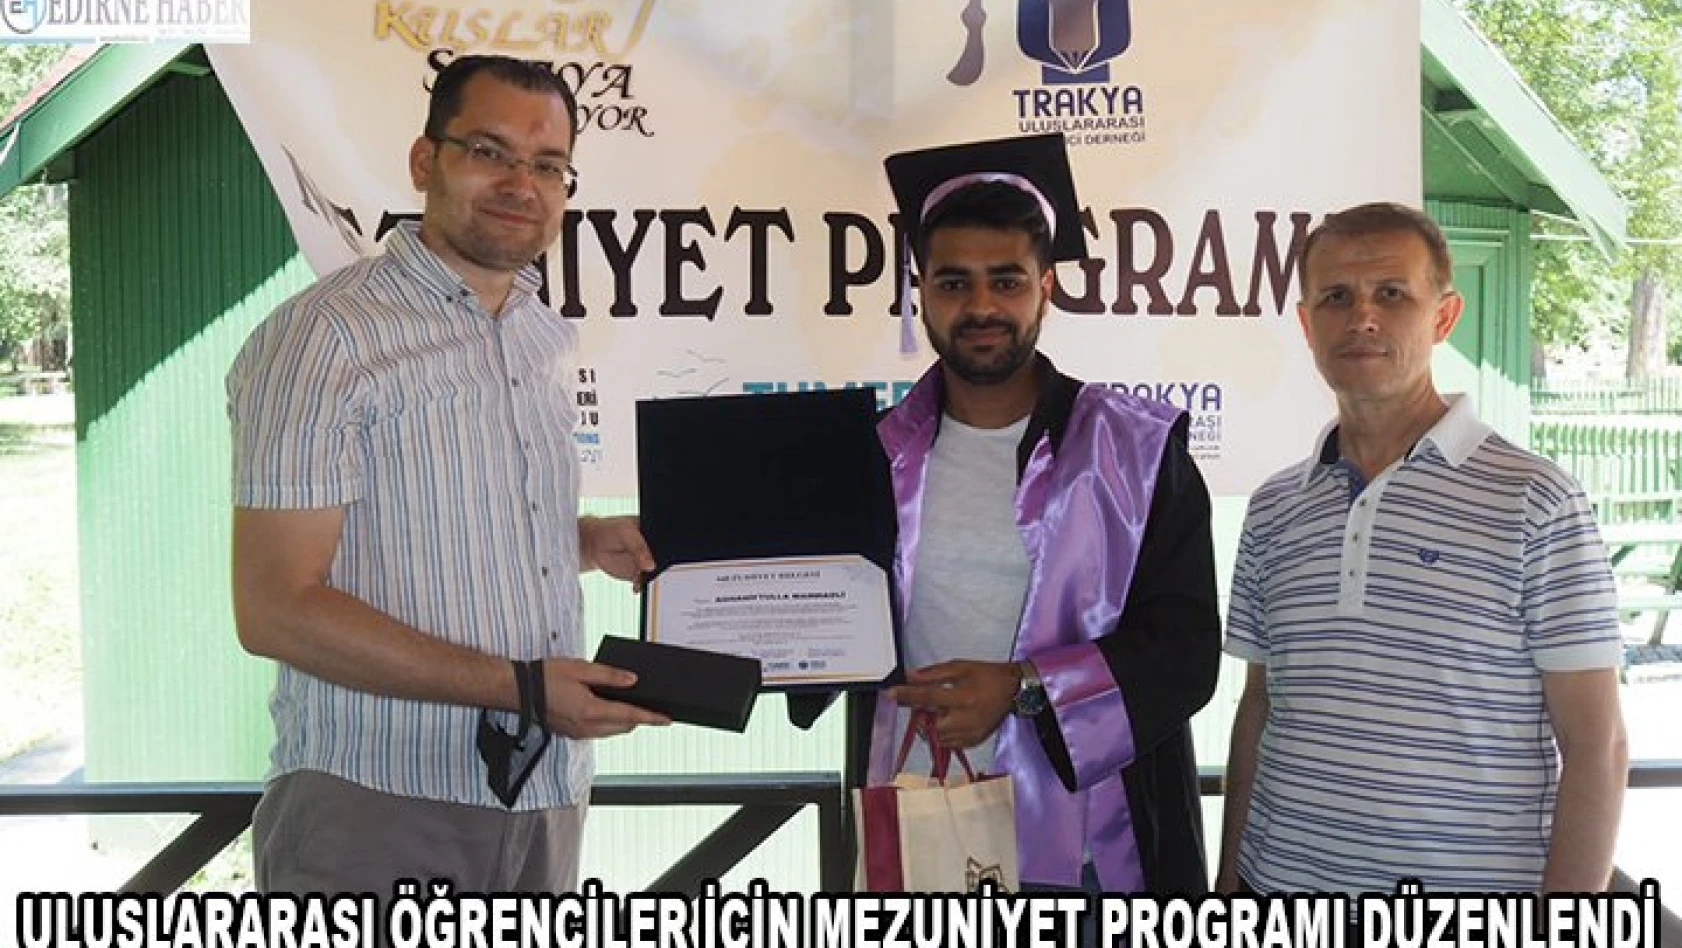 Uluslararası öğrenciler için mezuniyet programı düzenlendi